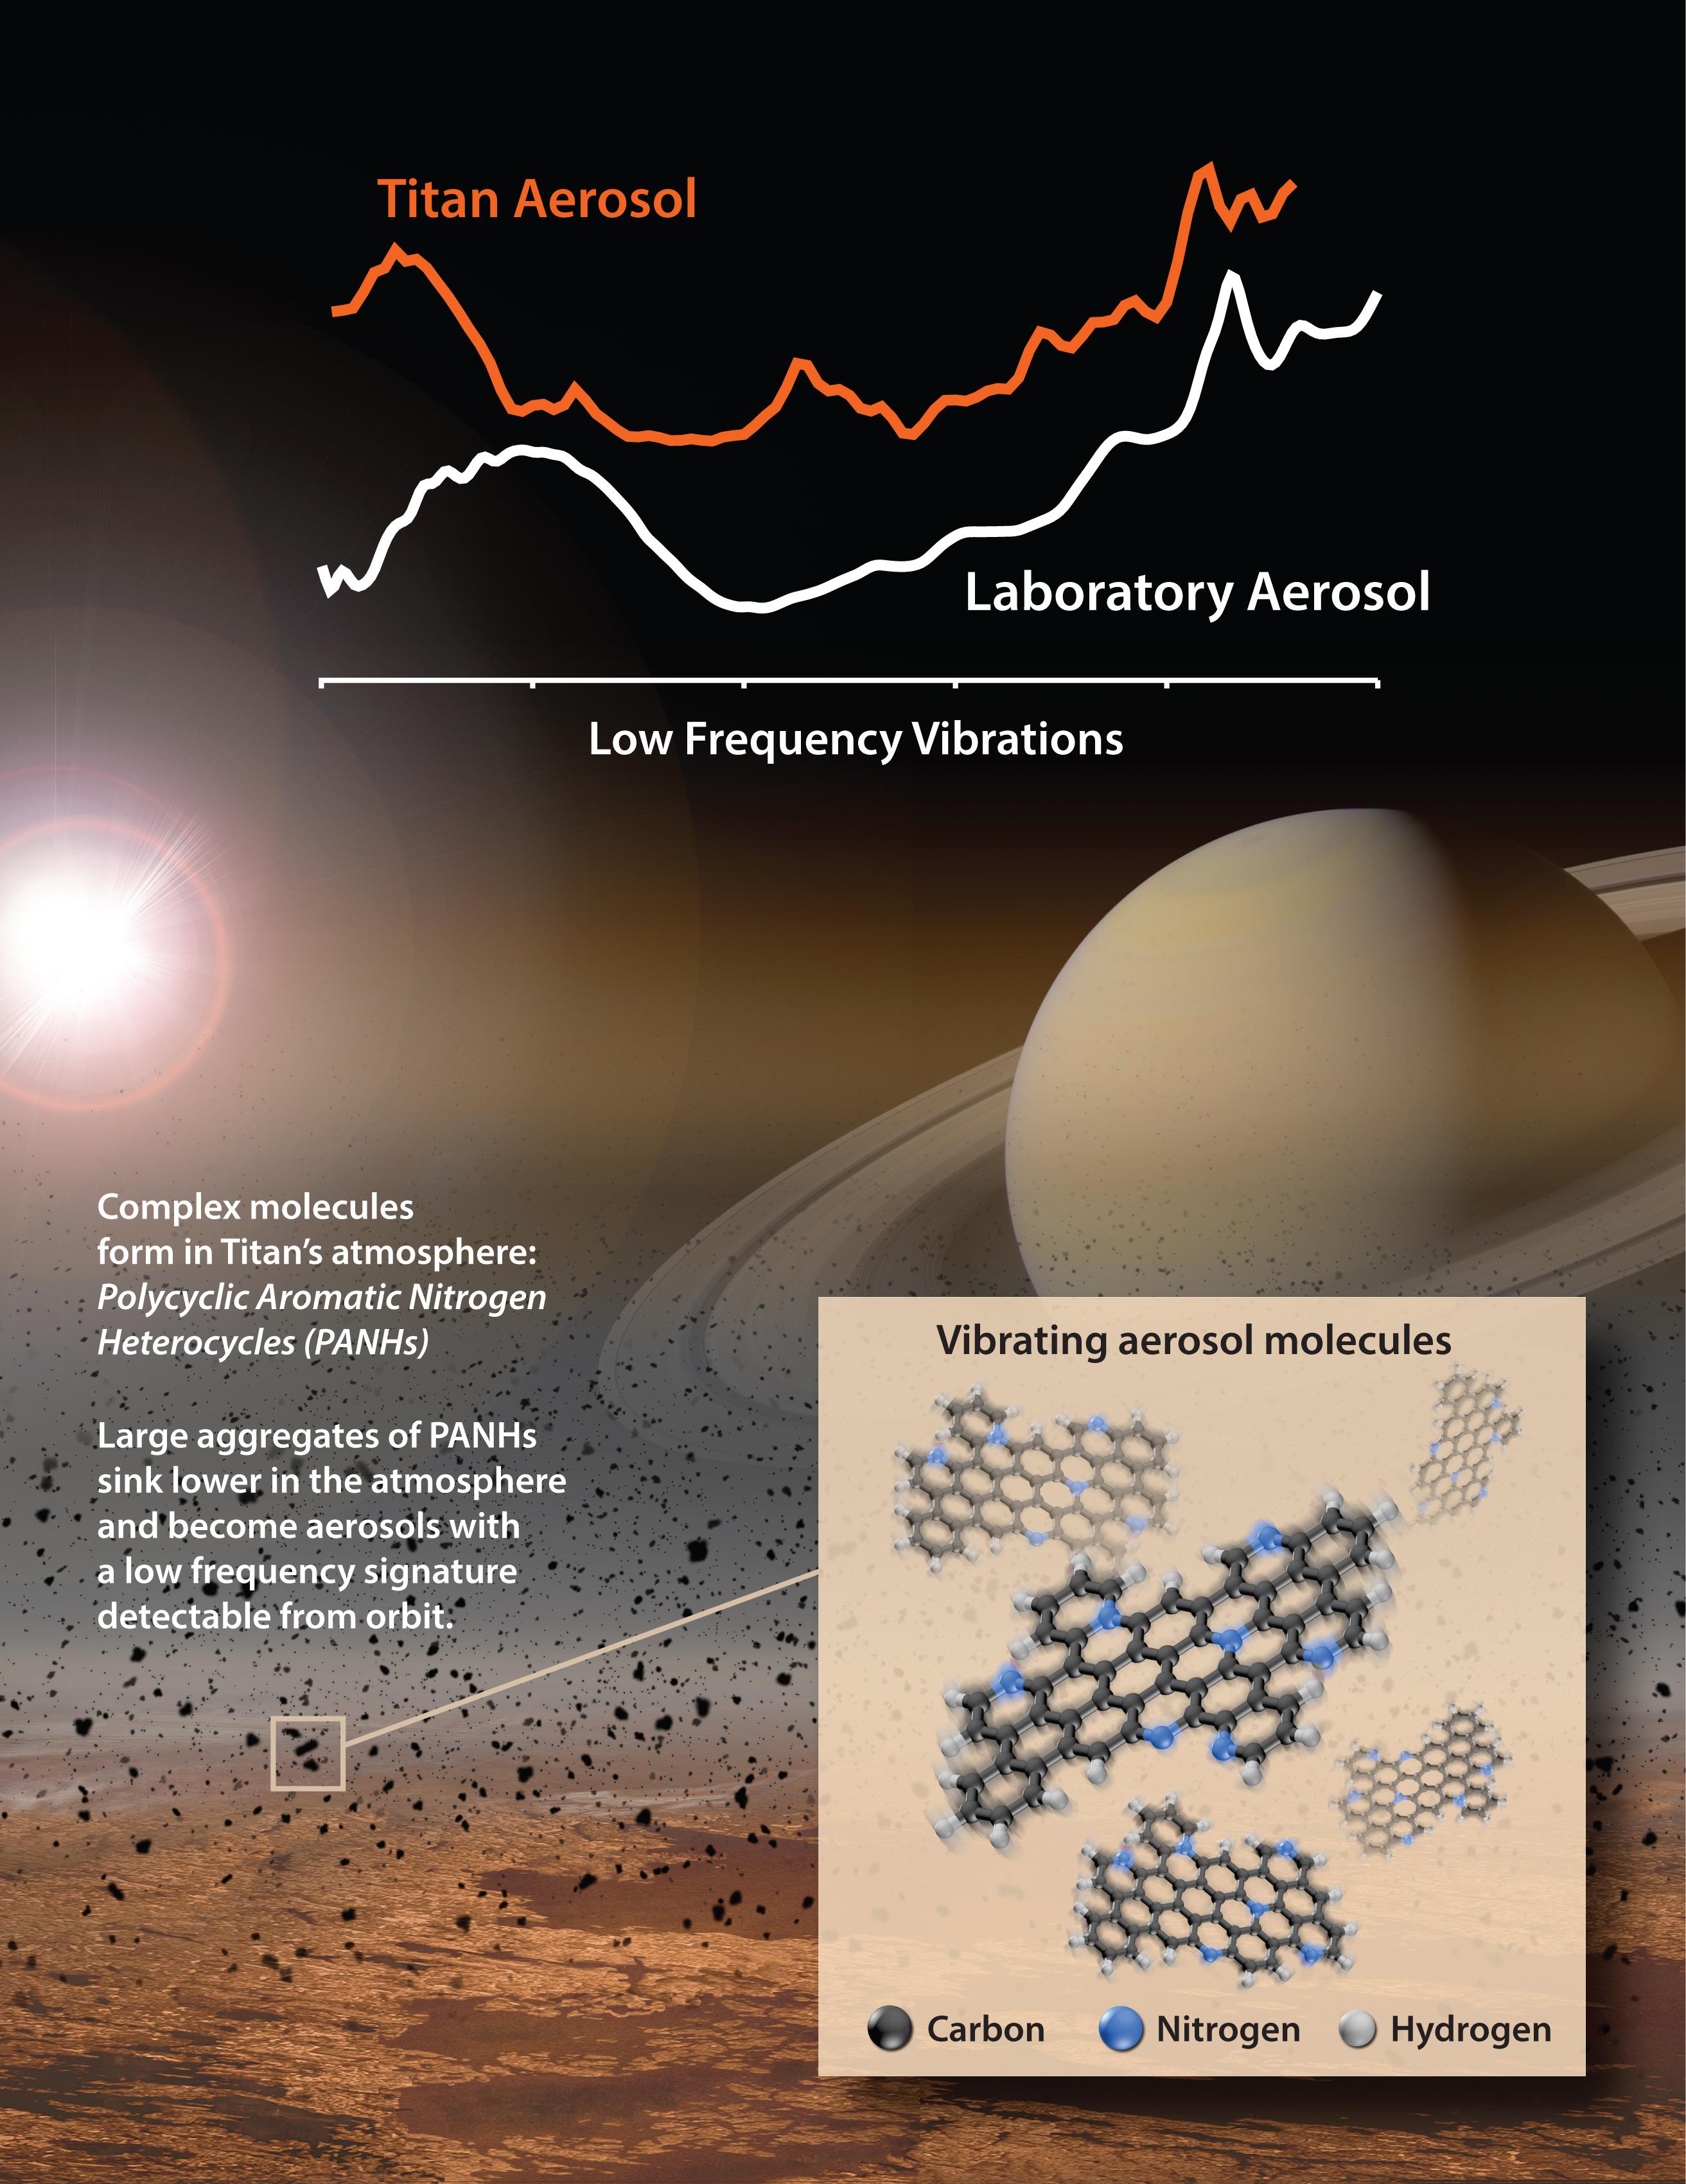 Titan's vibrating aerosol molecules